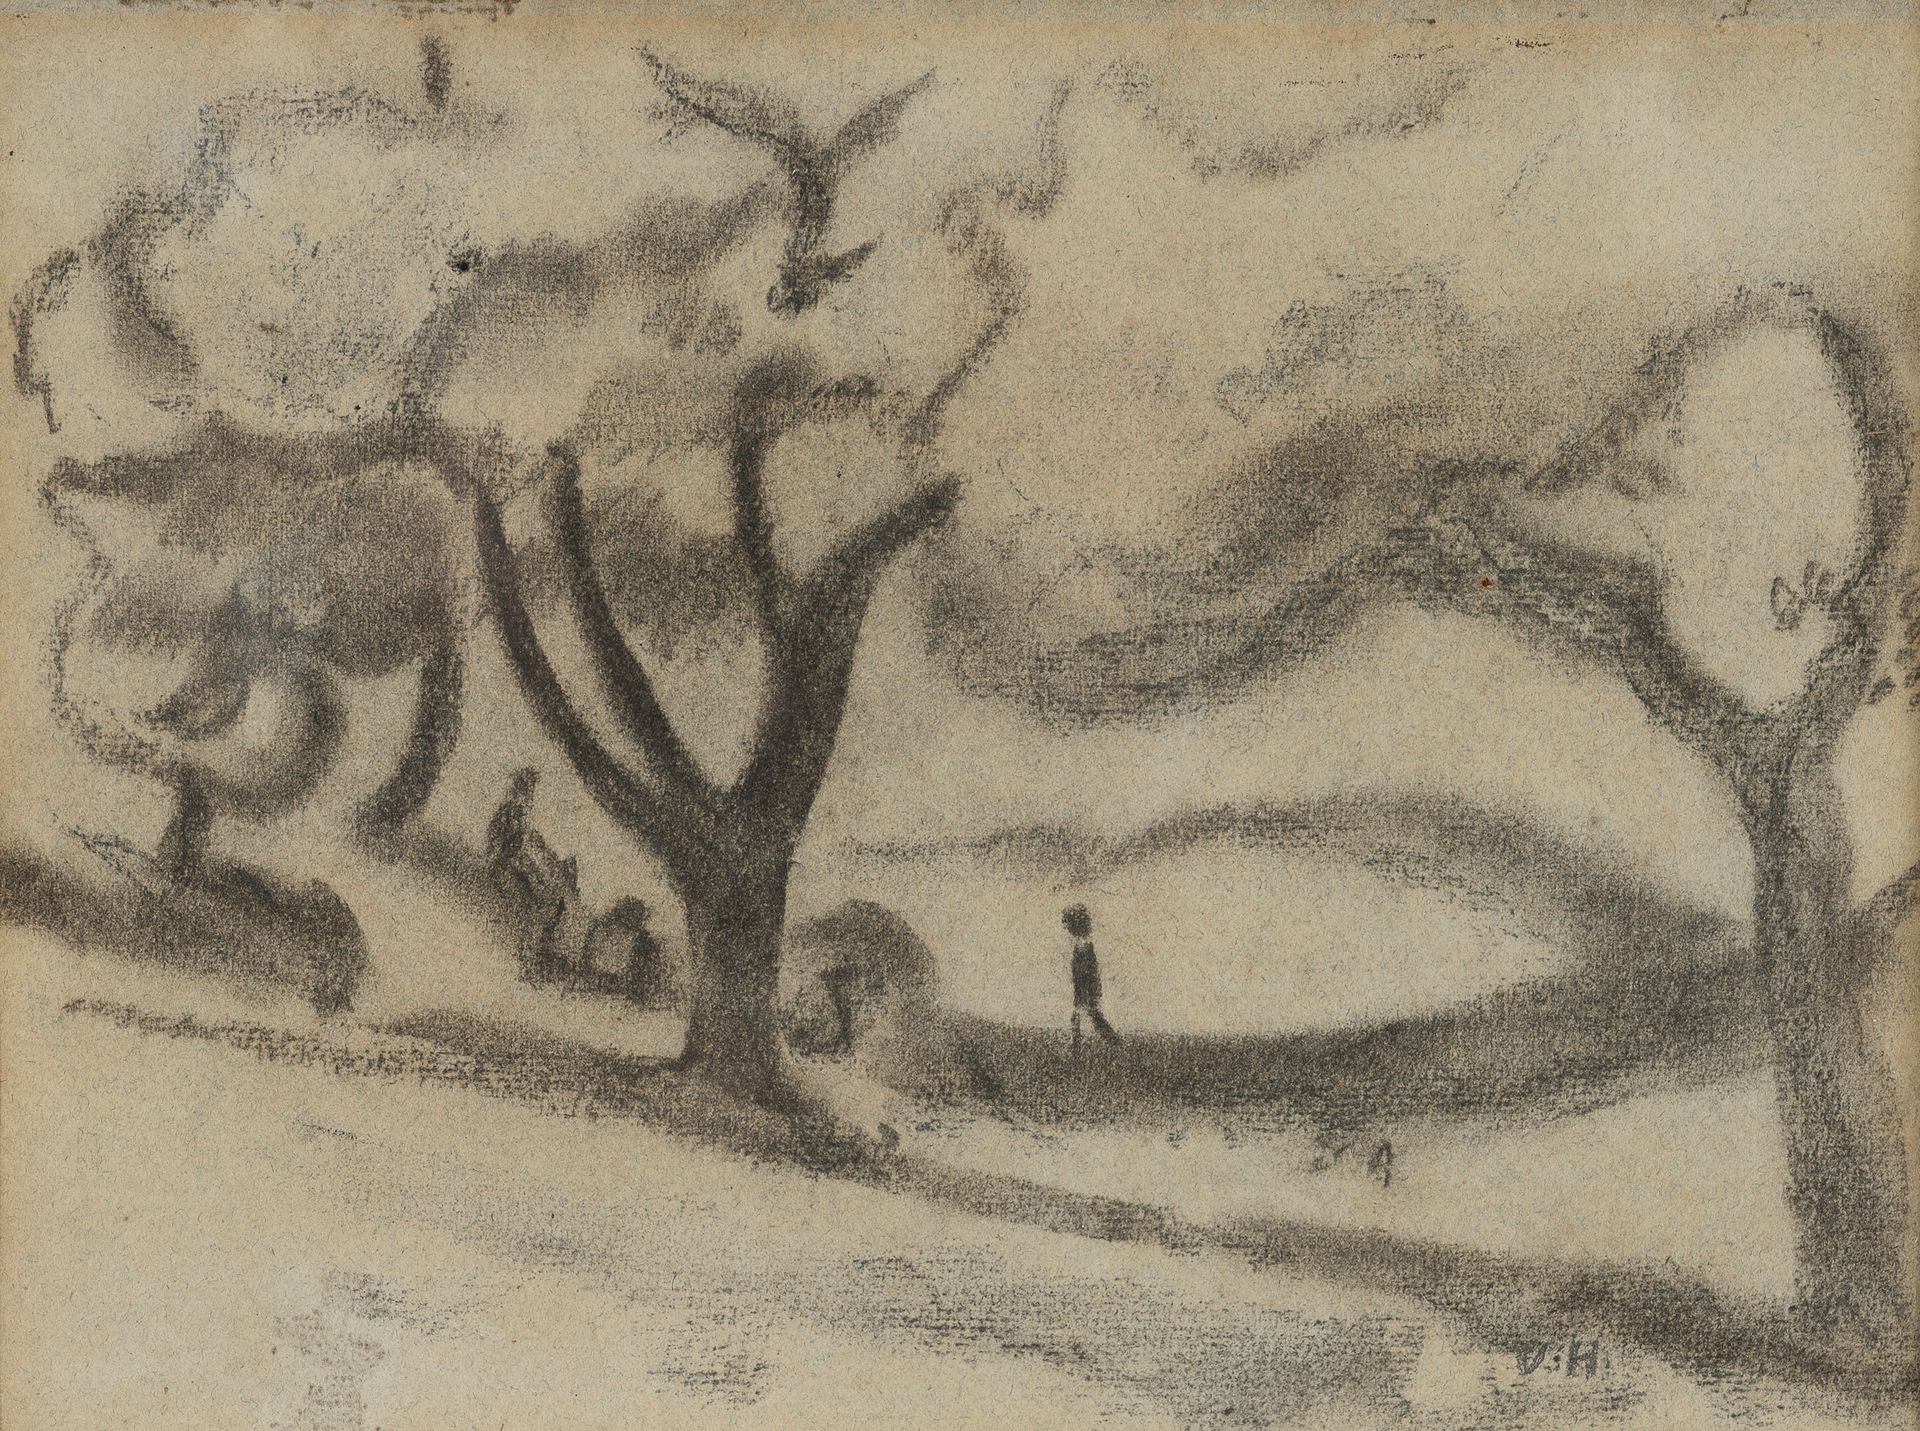 Null 威廉-范-哈塞尔(Willem VAN HASSELT) (1882-1963)

树下的人

右下角有石墨字样。

目测：21 x 27厘米。